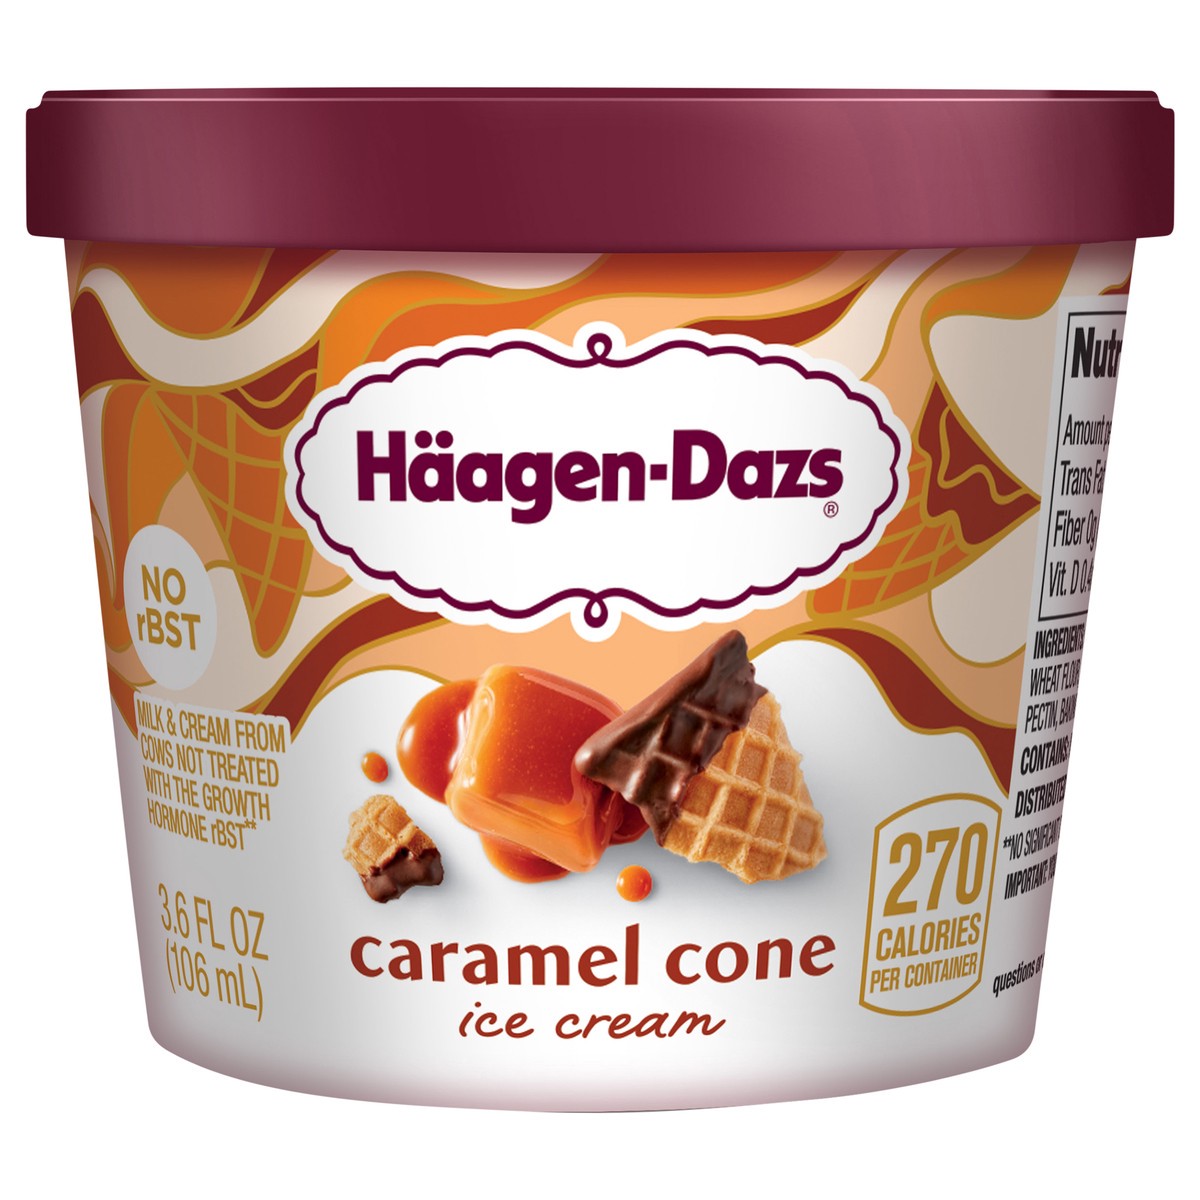 slide 1 of 1, HAAGEN-DAZS Ice Cream, Caramel Cone, 3.6 Fl. Oz. Cup | No GMO Ingredients | No rBST | Gluten Free, 3.6 fl oz